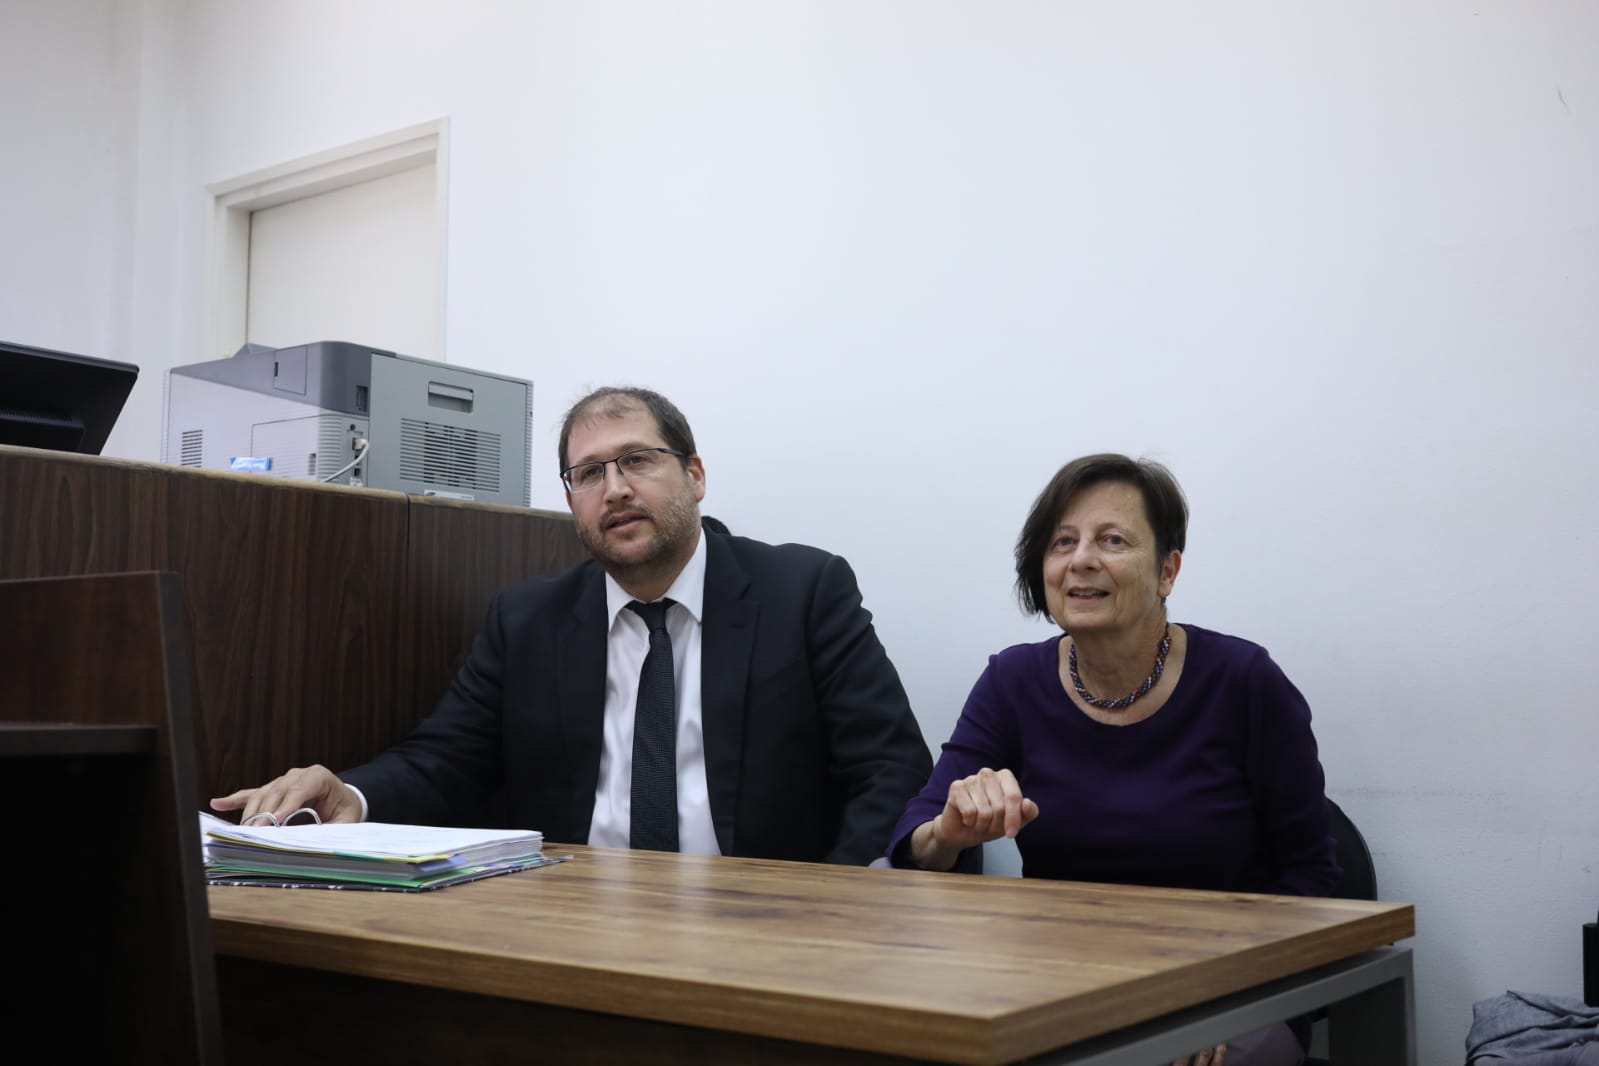 ד"ר ענת מטר ומיכאל ספרד בבית המשפט ביום ראשון השבוע (אורן זיו)